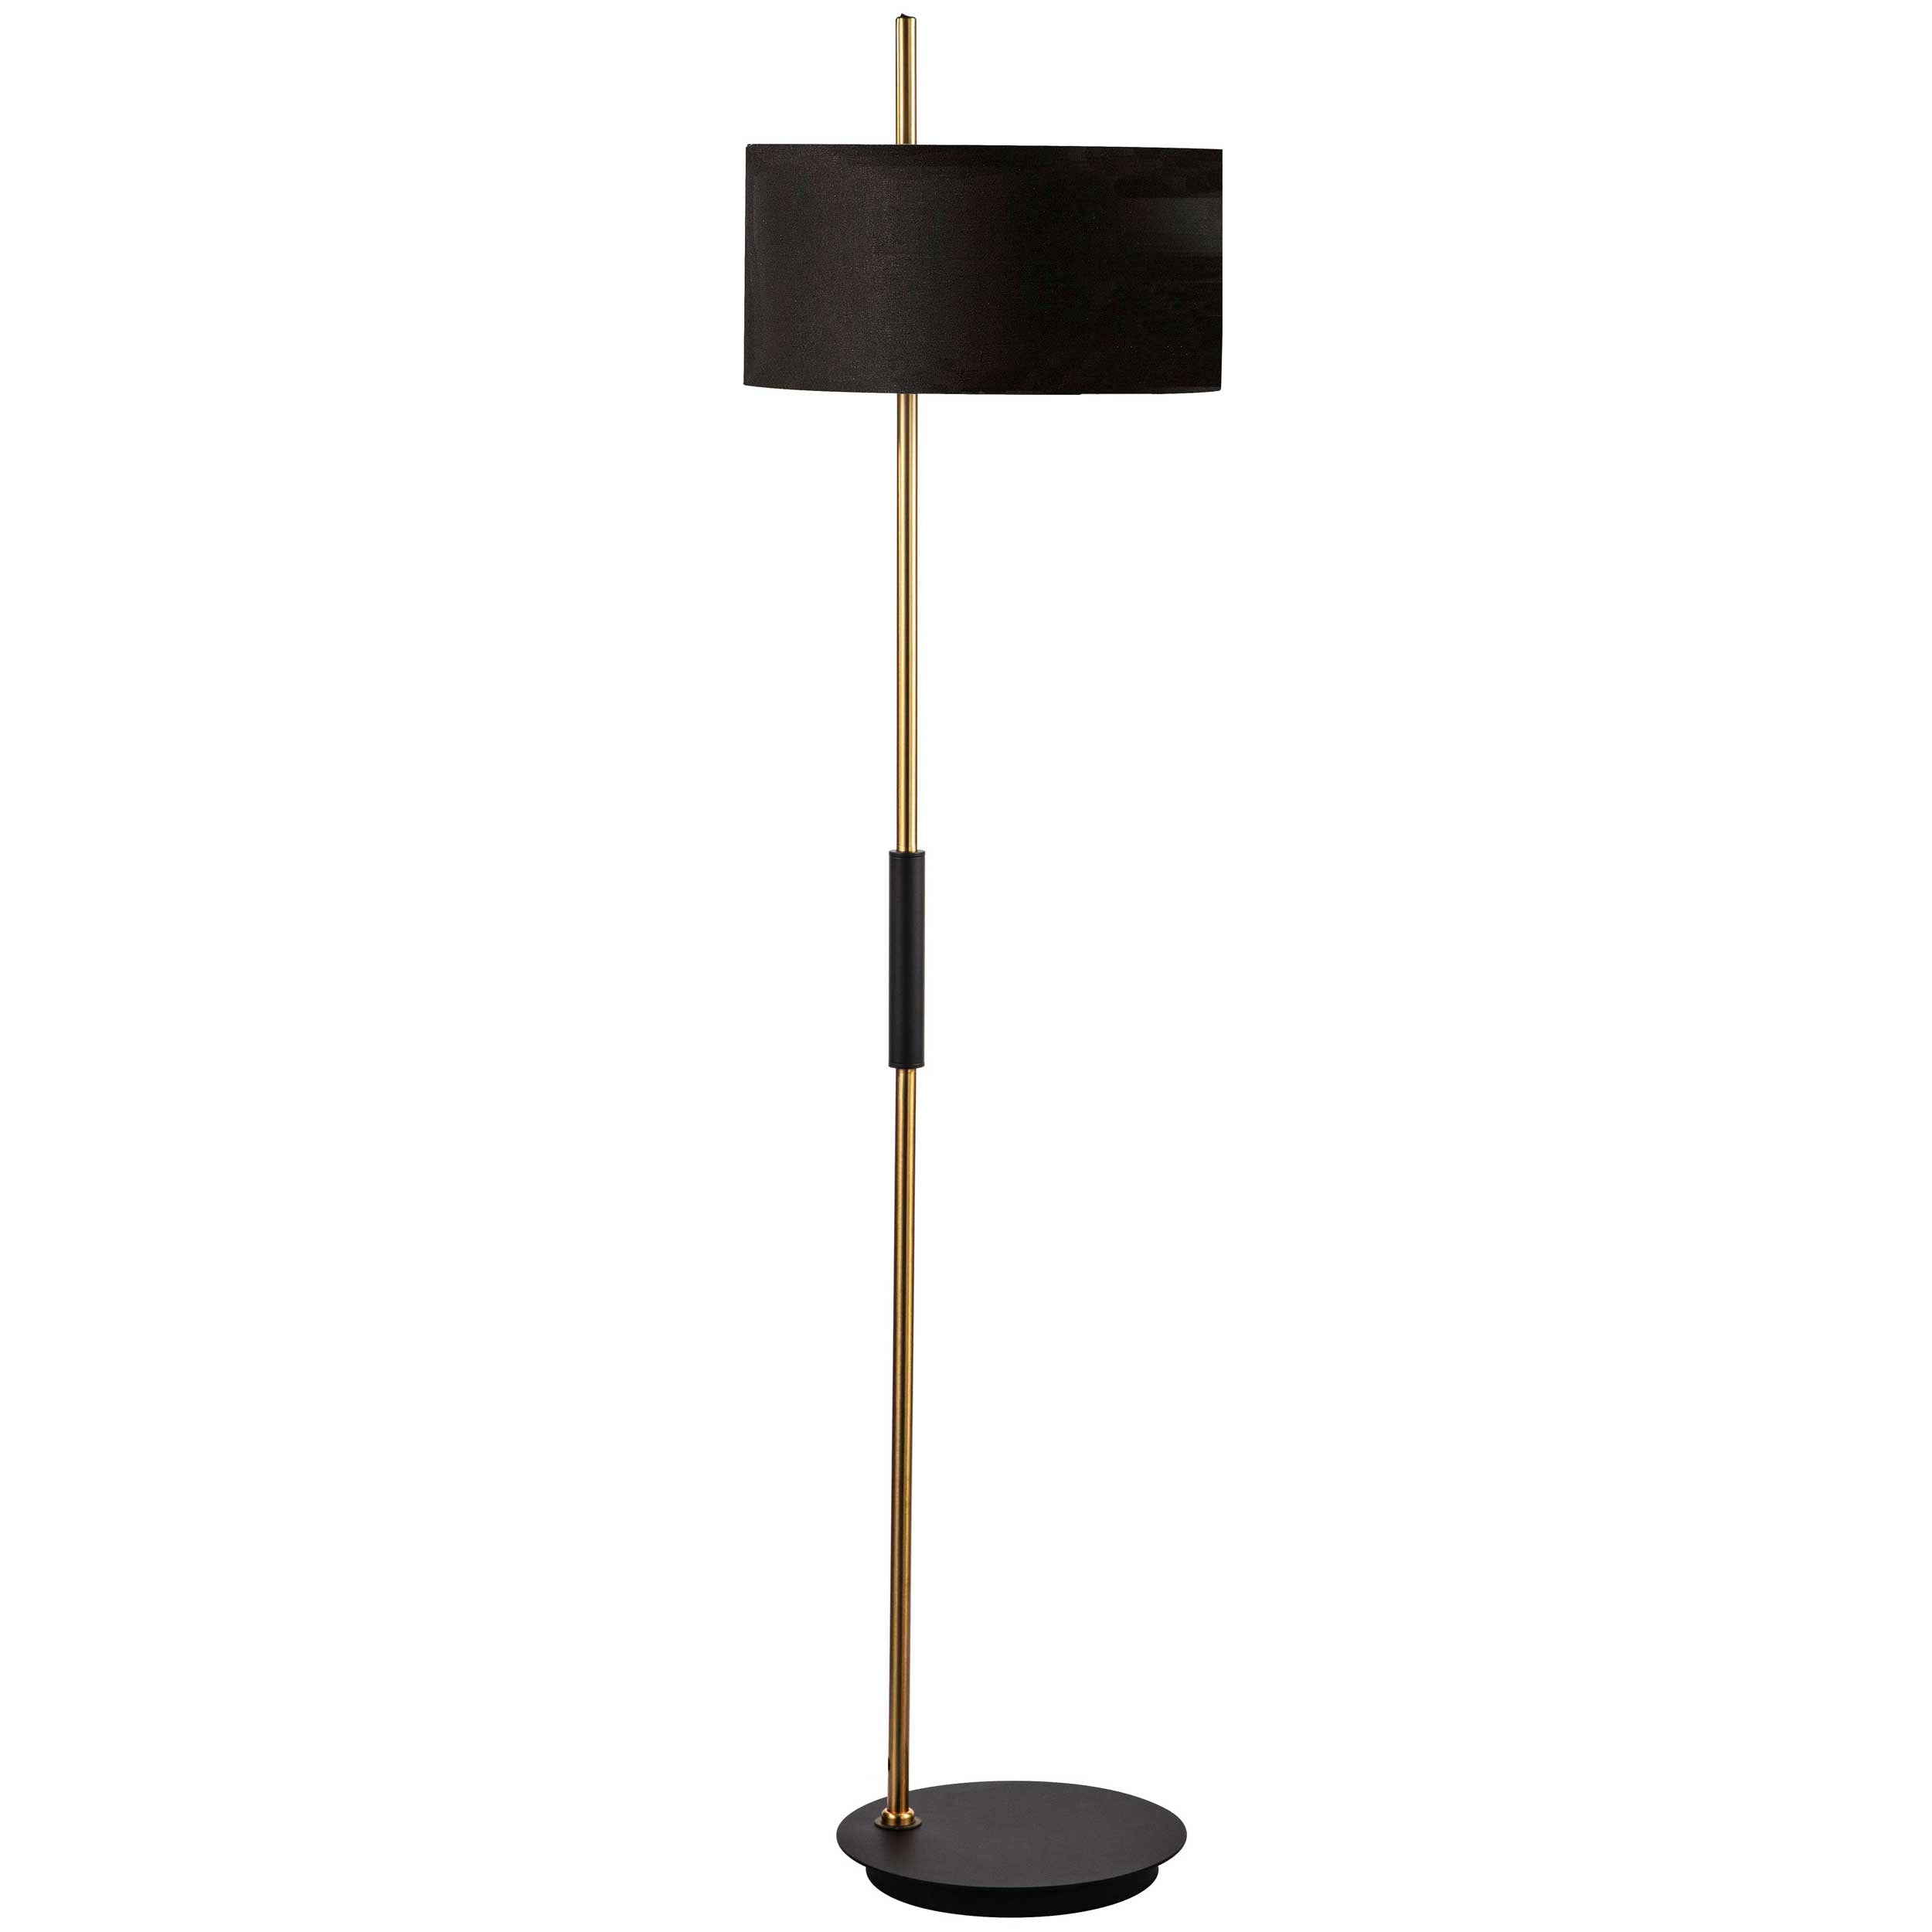 FITZGERALD Floor lamp Black, Gold - FTG-622F-MB-AGB-BK | DAINOLITE